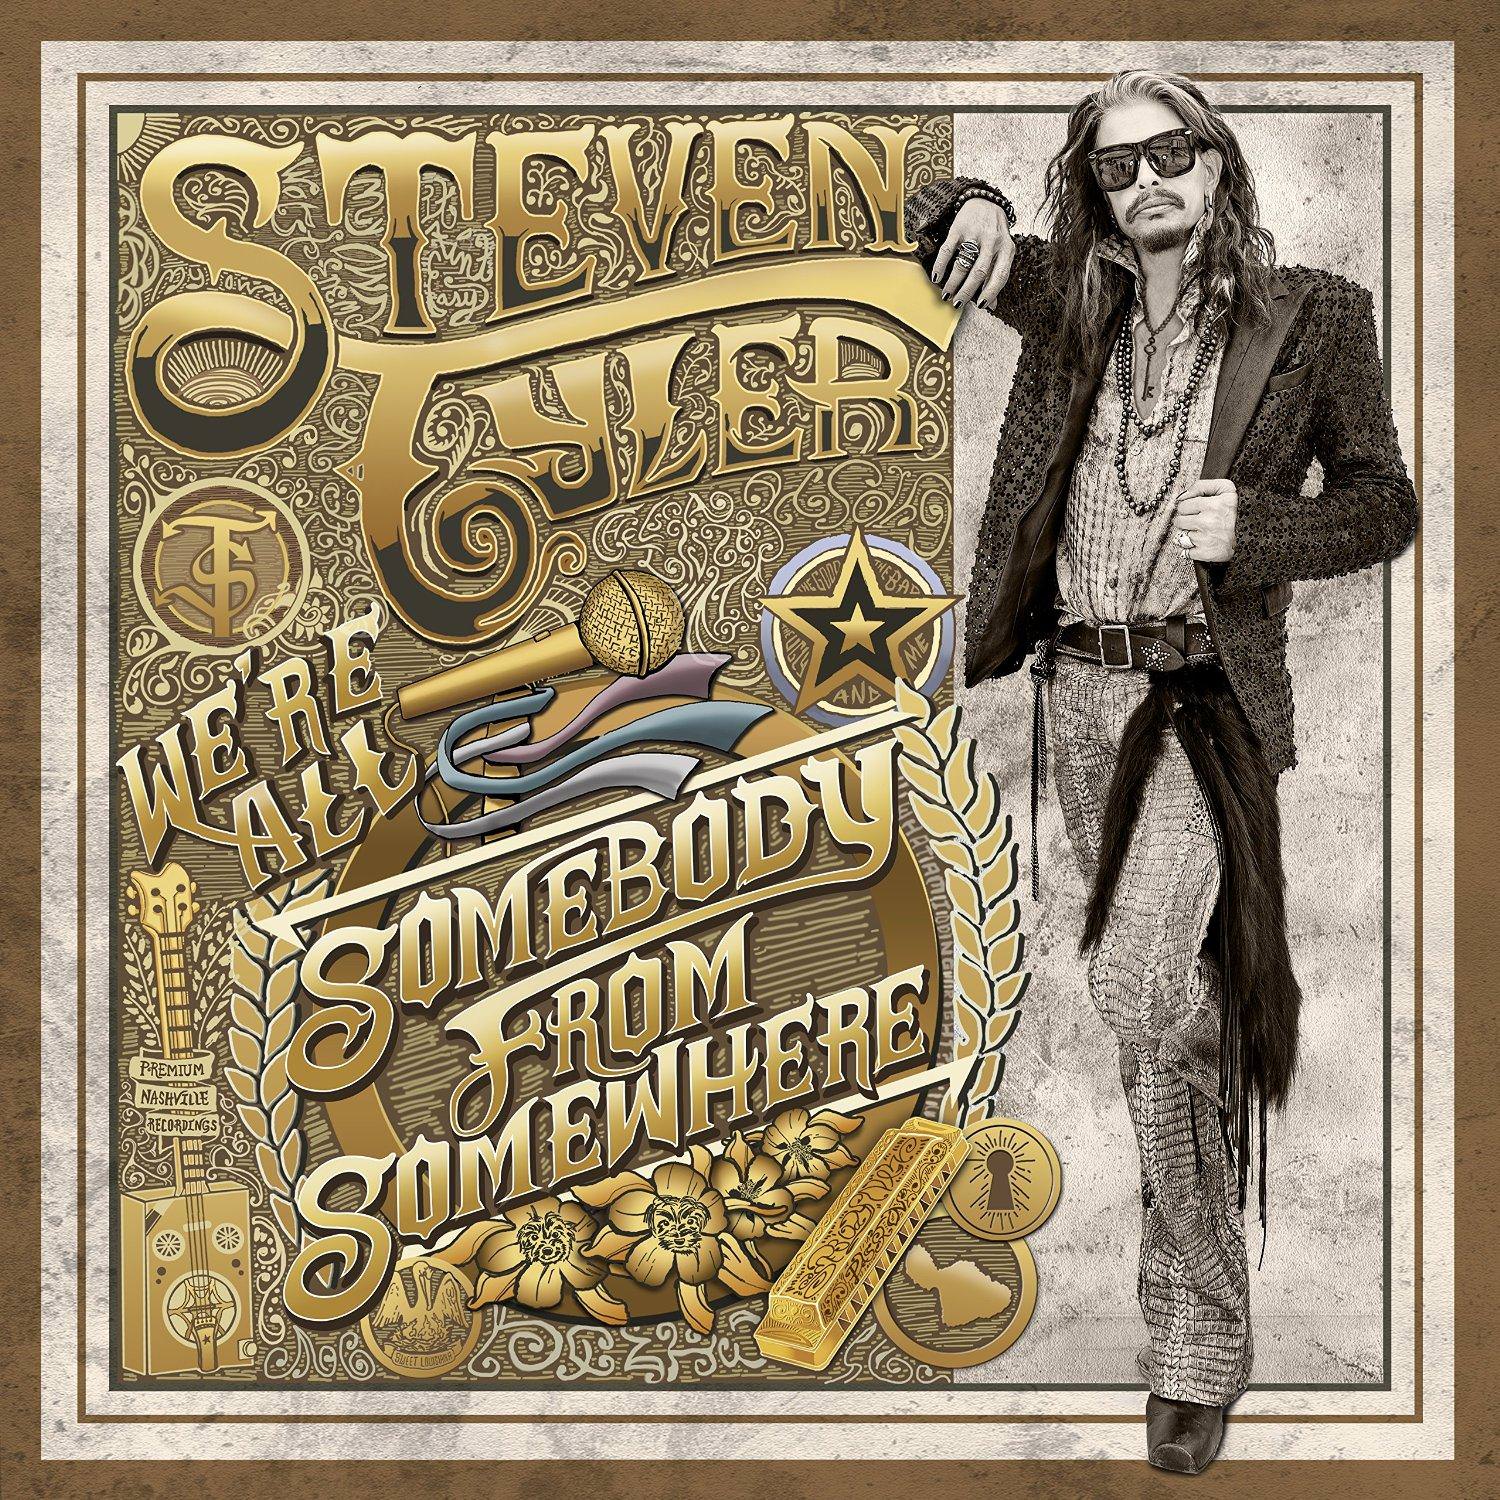 Steven Tyler – We’re All Somebody From Somewhere (2016) [HDTracks FLAC 24bit/96kHz]